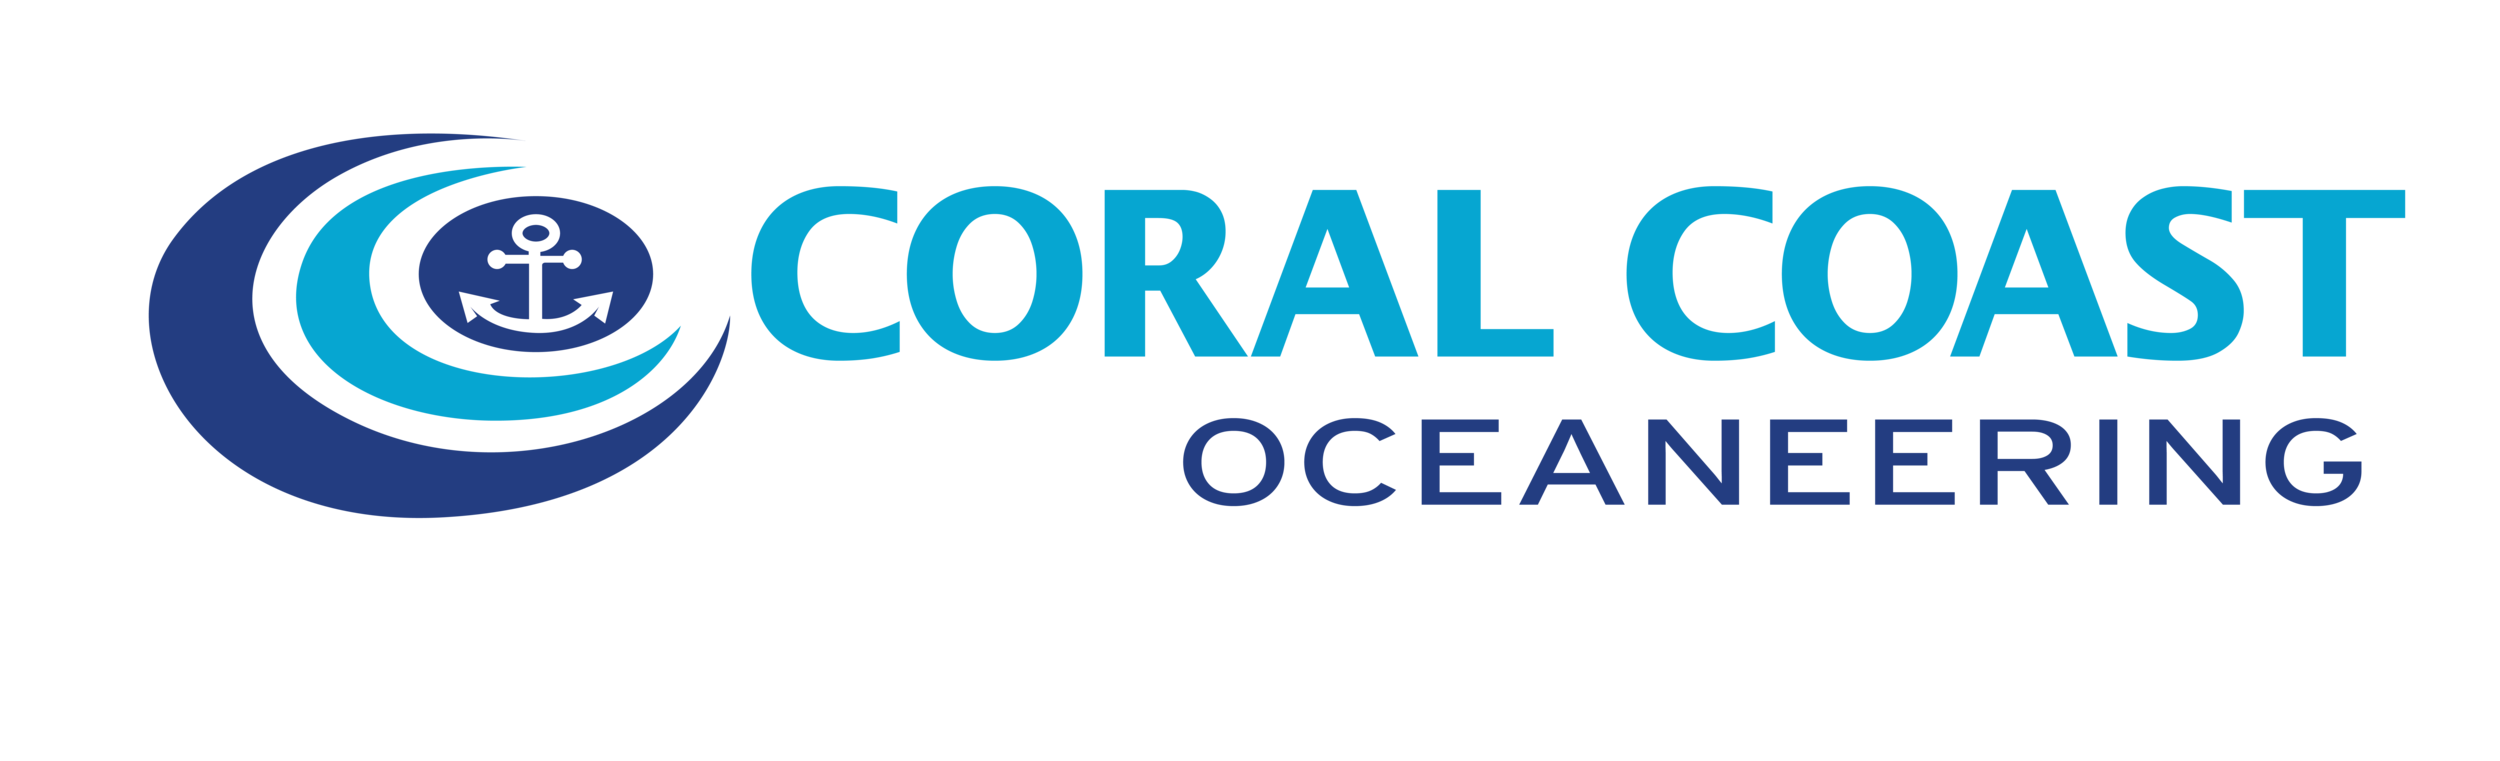 Coral Coast Oceaneering 